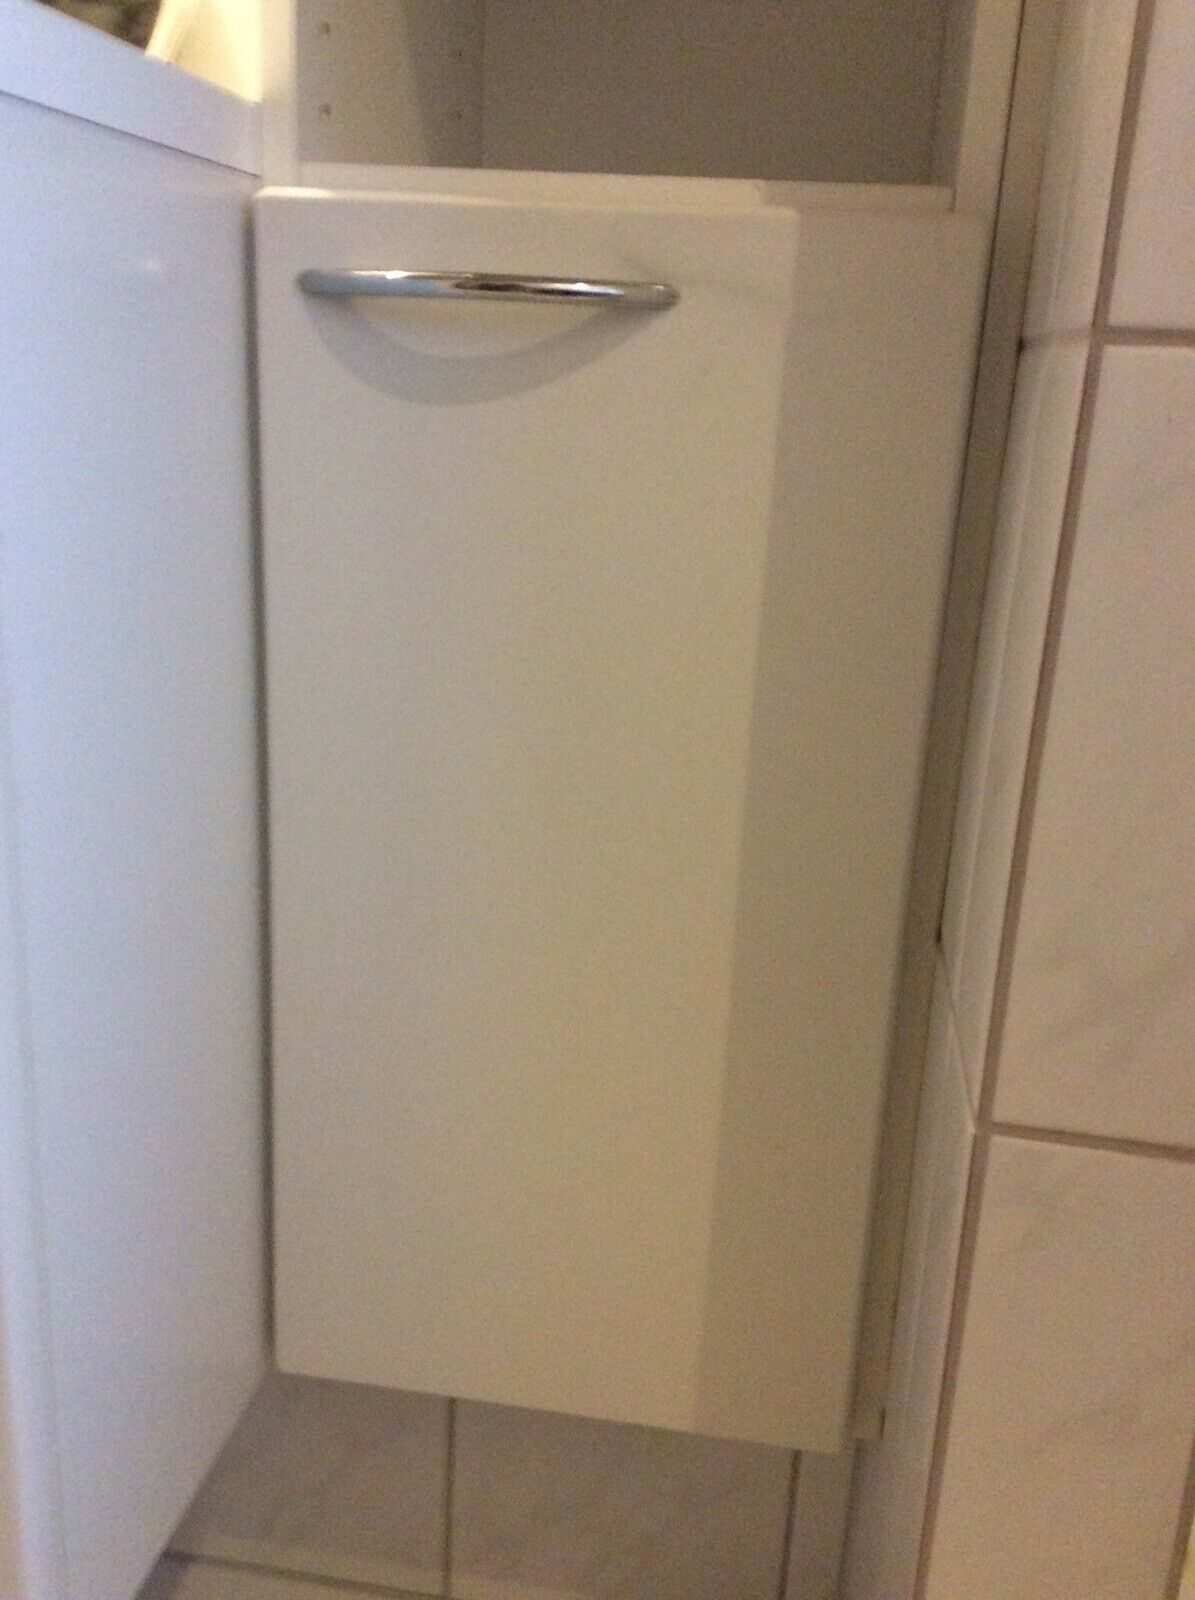 KØBES: HTH Soft låge til badeværelse. H 57,0 cm - B 29,5 cm - 2 cm. Badeværelset er fra 2001. dba.dk – Køb og Salg af Nyt Brugt